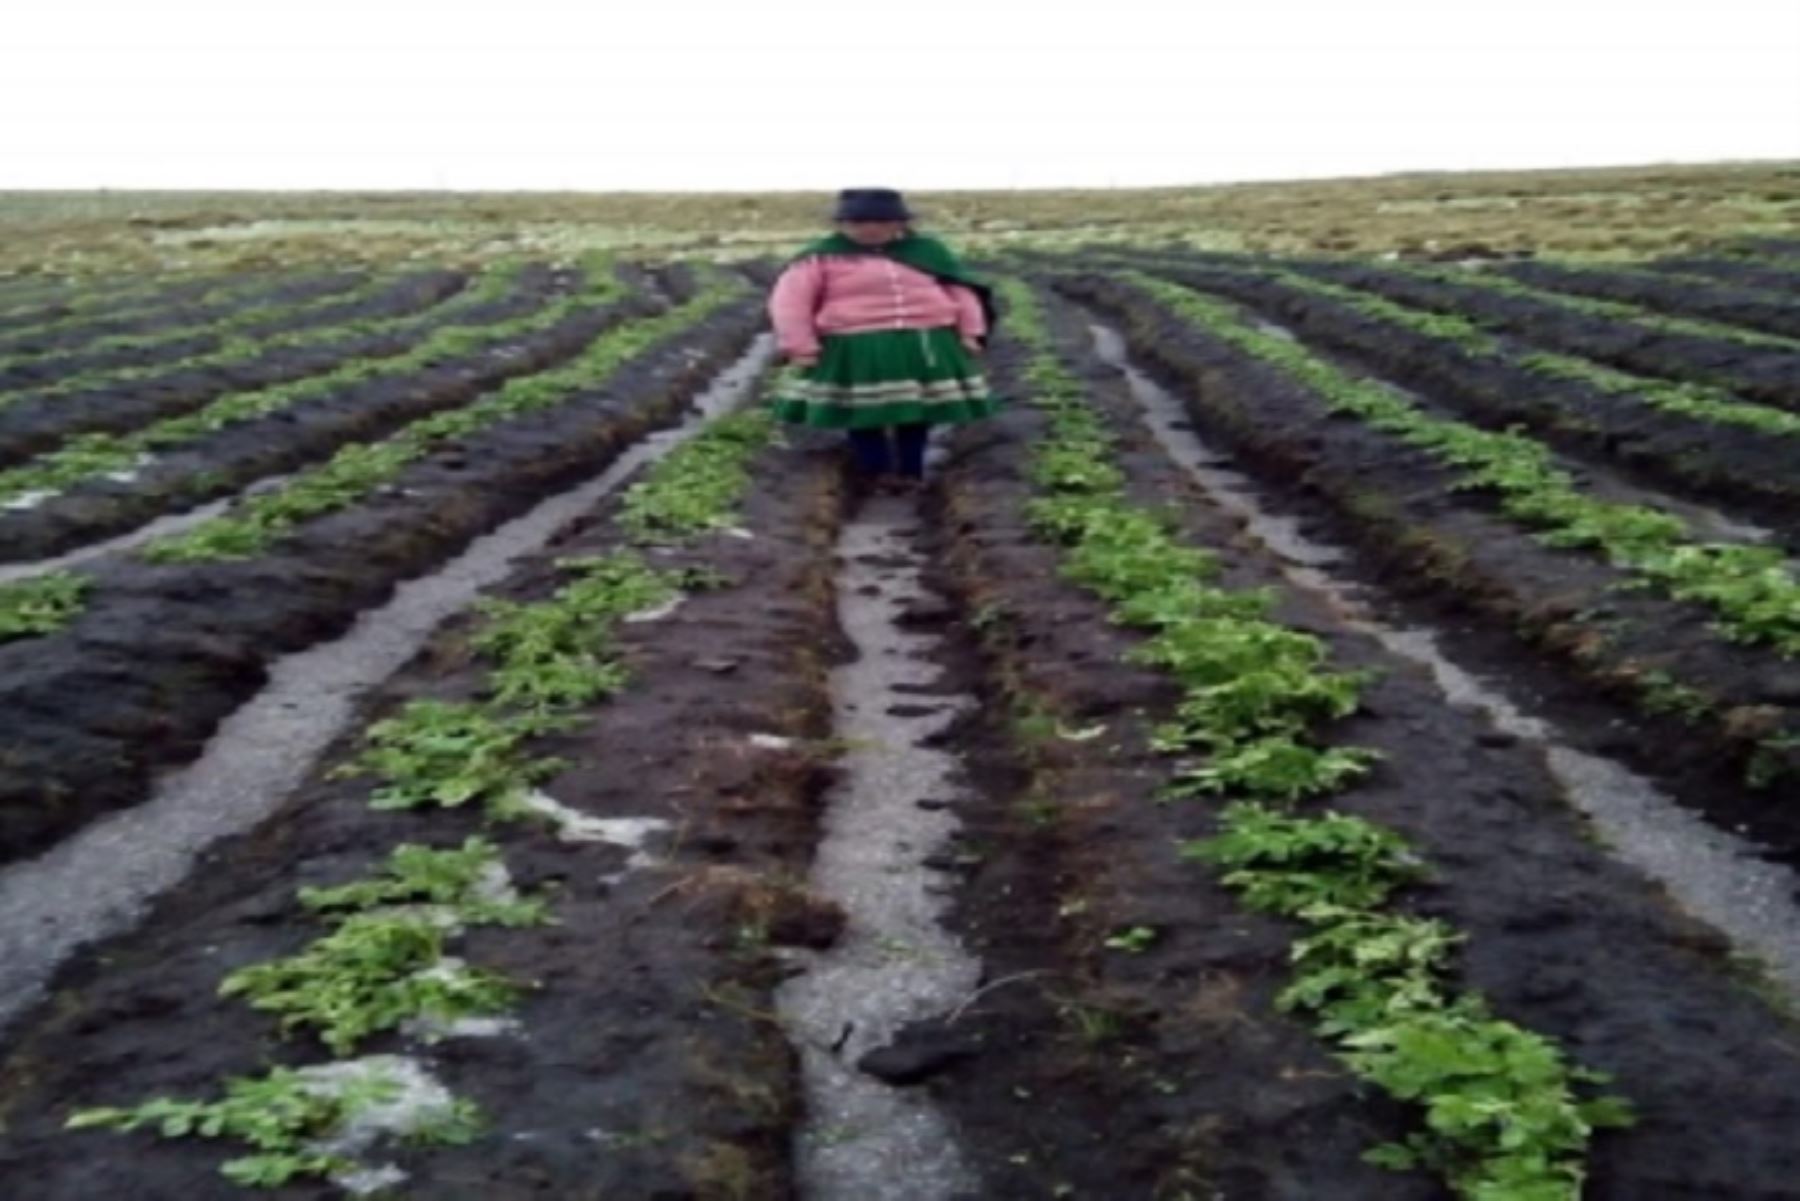 Las lluvias intensas acompañadas de granizada afectaron áreas de cultivo en el distrito de Tumay Huaraca, provincia de Andahuay, región Apurímac, informó la Dirección Desconcentrada del Instituto Nacional de Defensa Civil (Indeci).